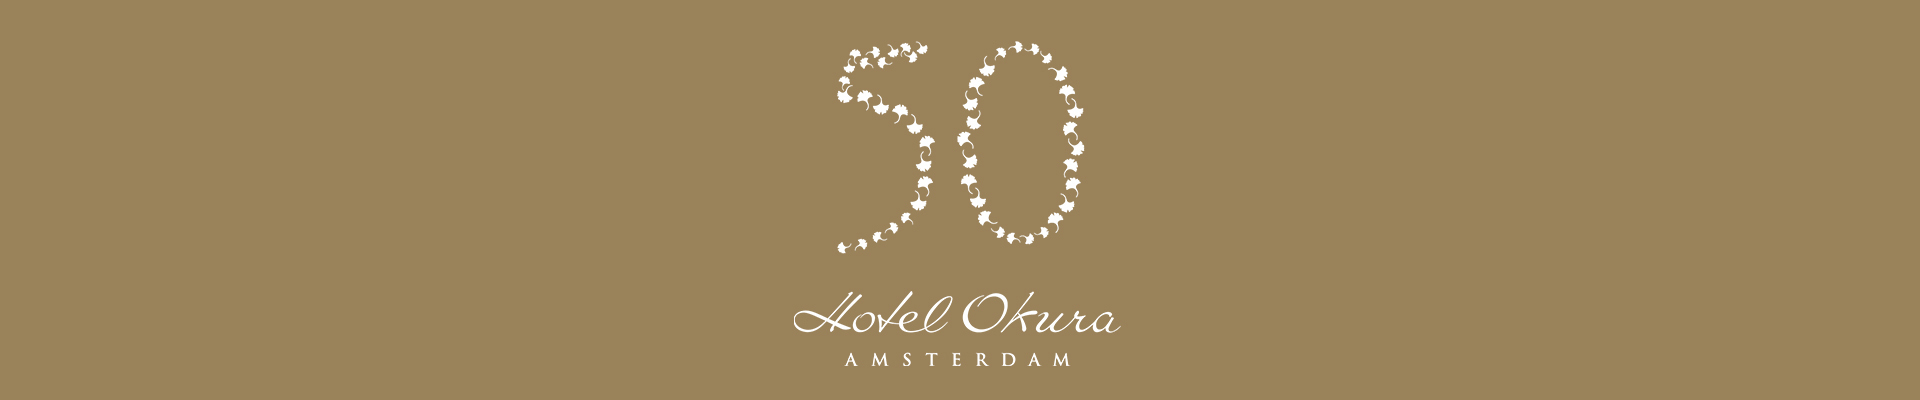 50-jarig Jubileumviering Hotel Okura Amsterdam